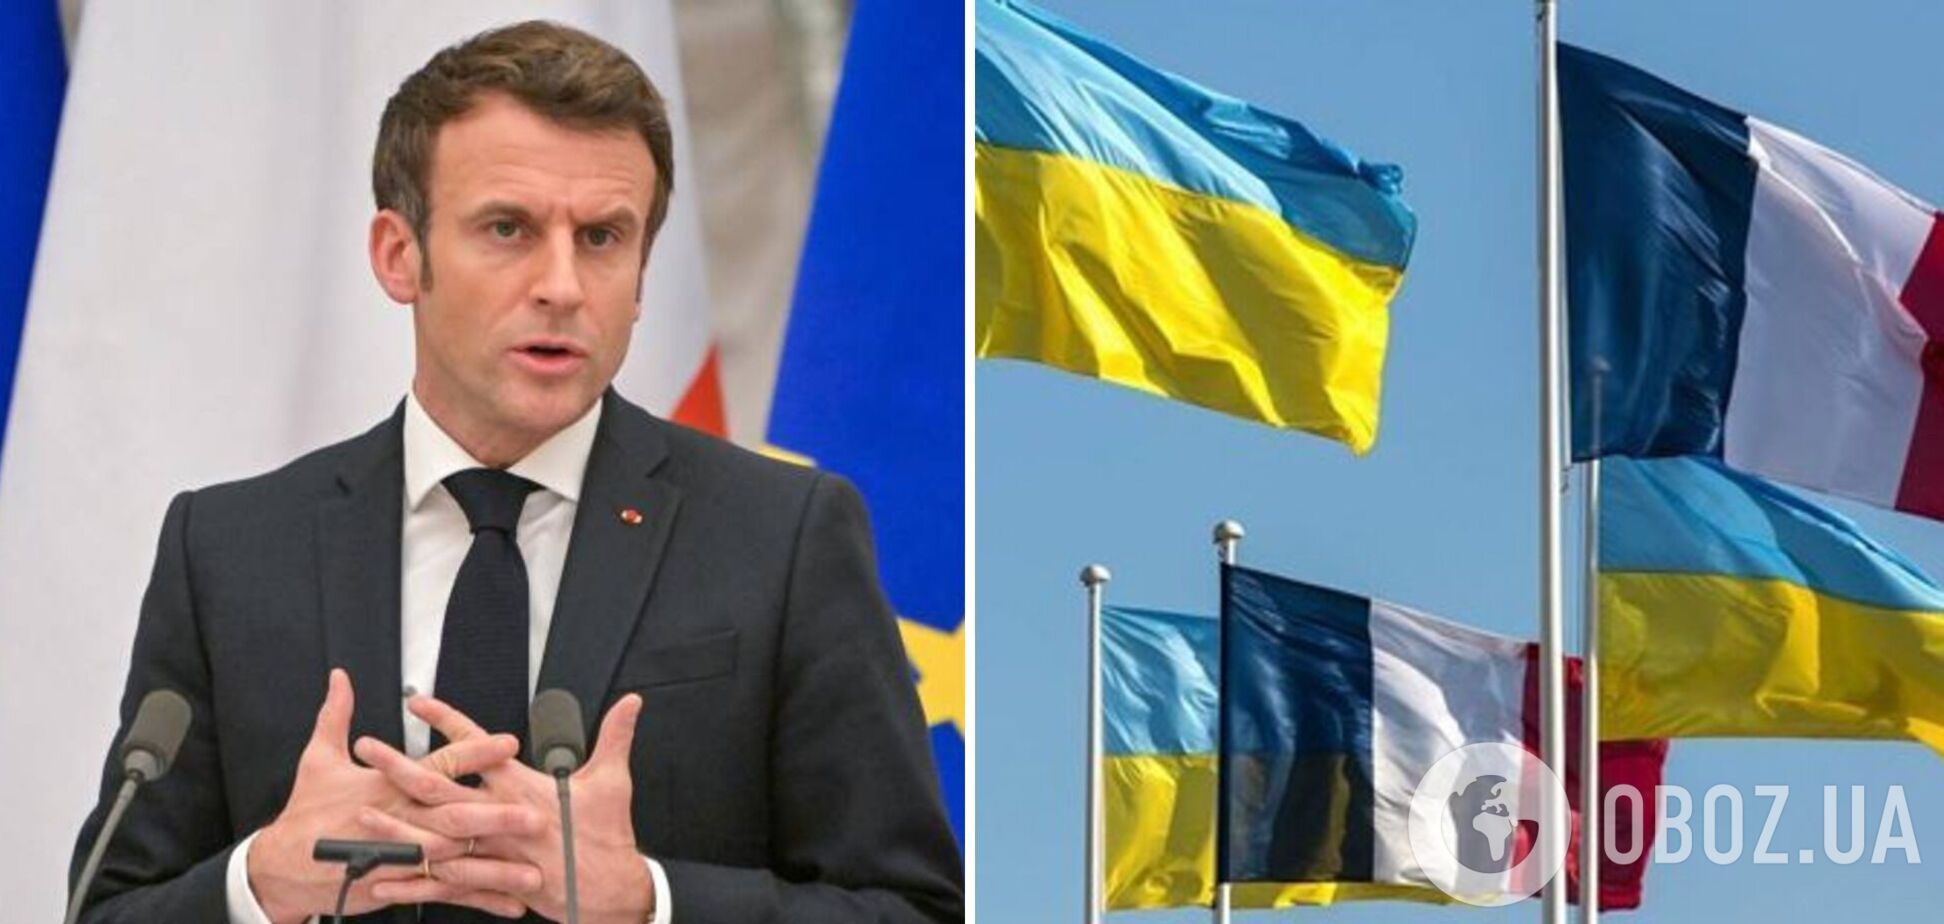 Франция не намерена идти на уступки России: у Макрона заявили, что Украина должна победить в войне